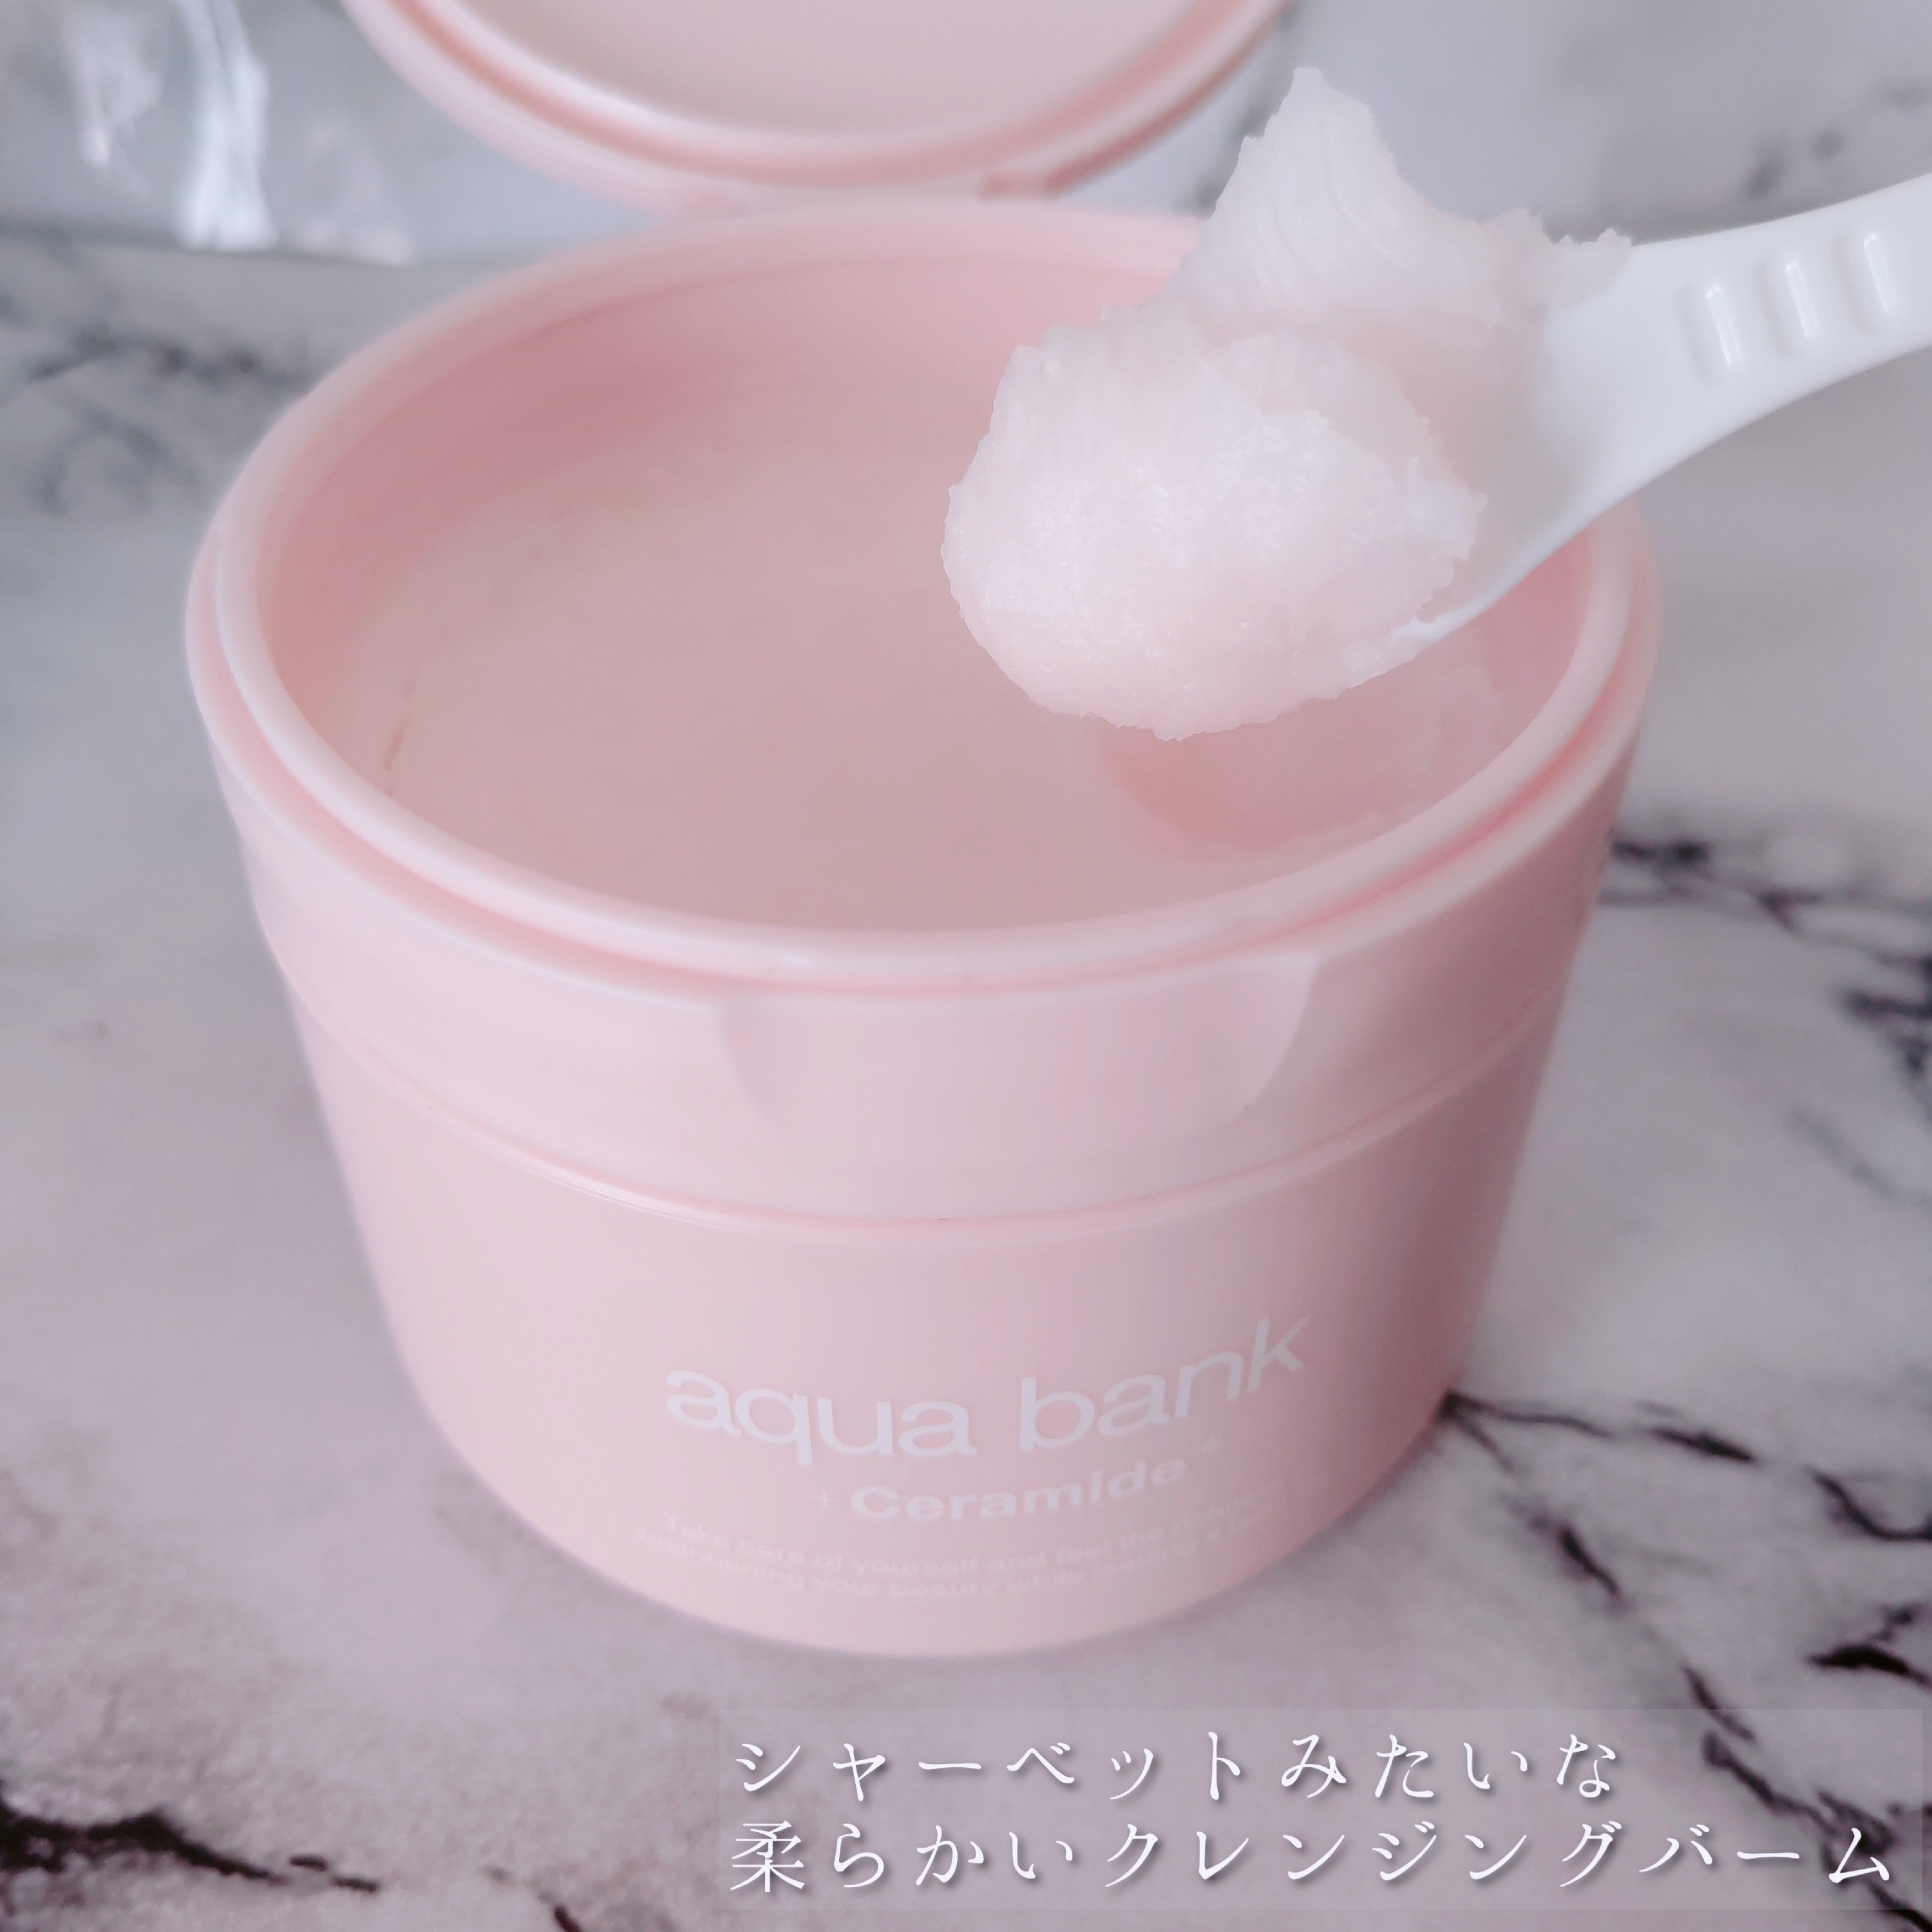 aqua bank　クレンジングバームピンクを使ったYuKaRi♡さんのクチコミ画像4